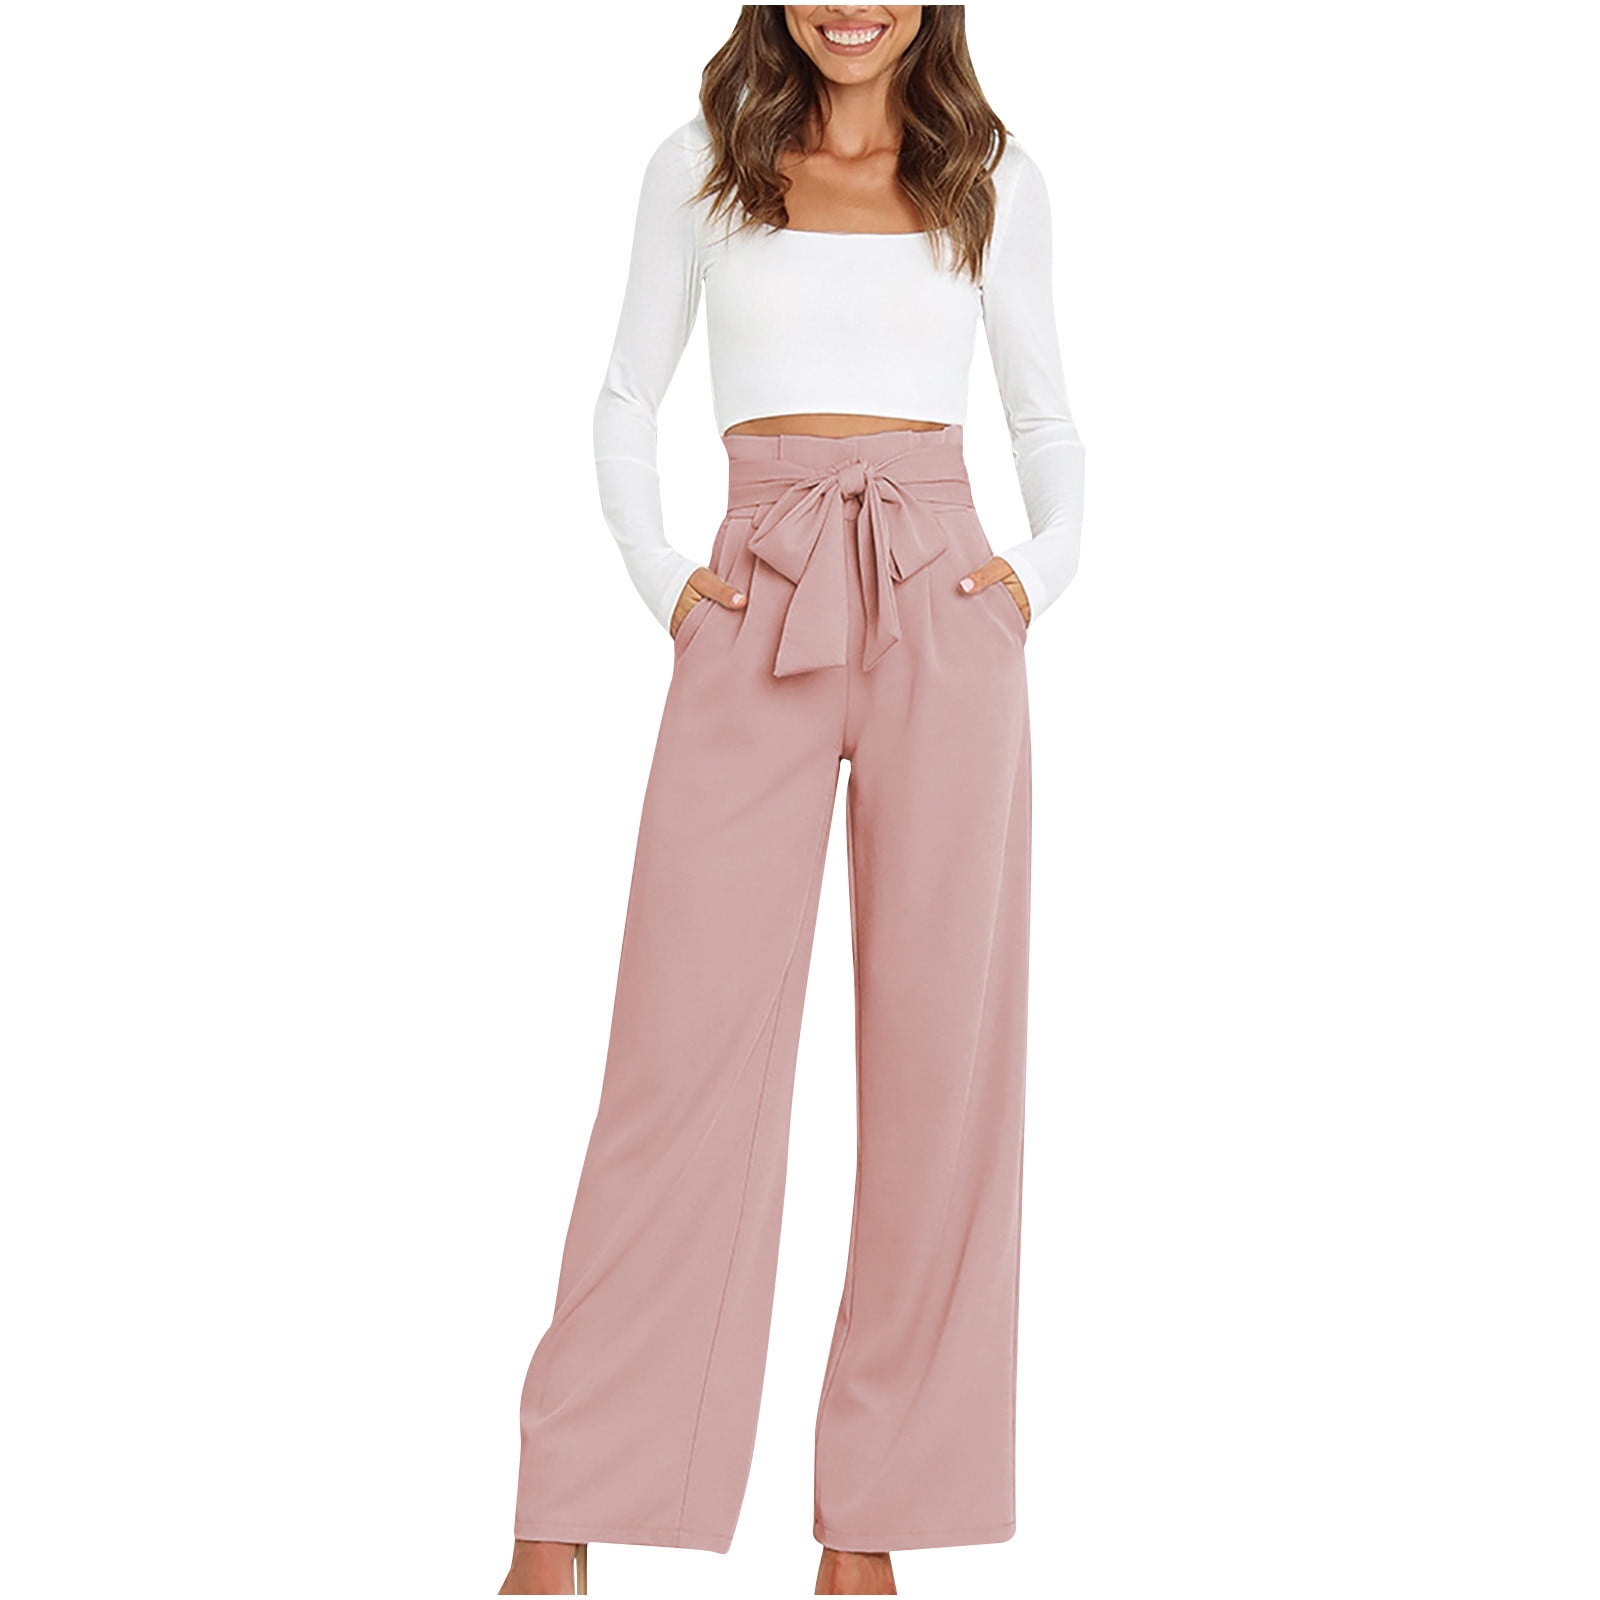 Levi's NWT 721 'Blush' Pink Corduroy Pants Size 28 | eBay